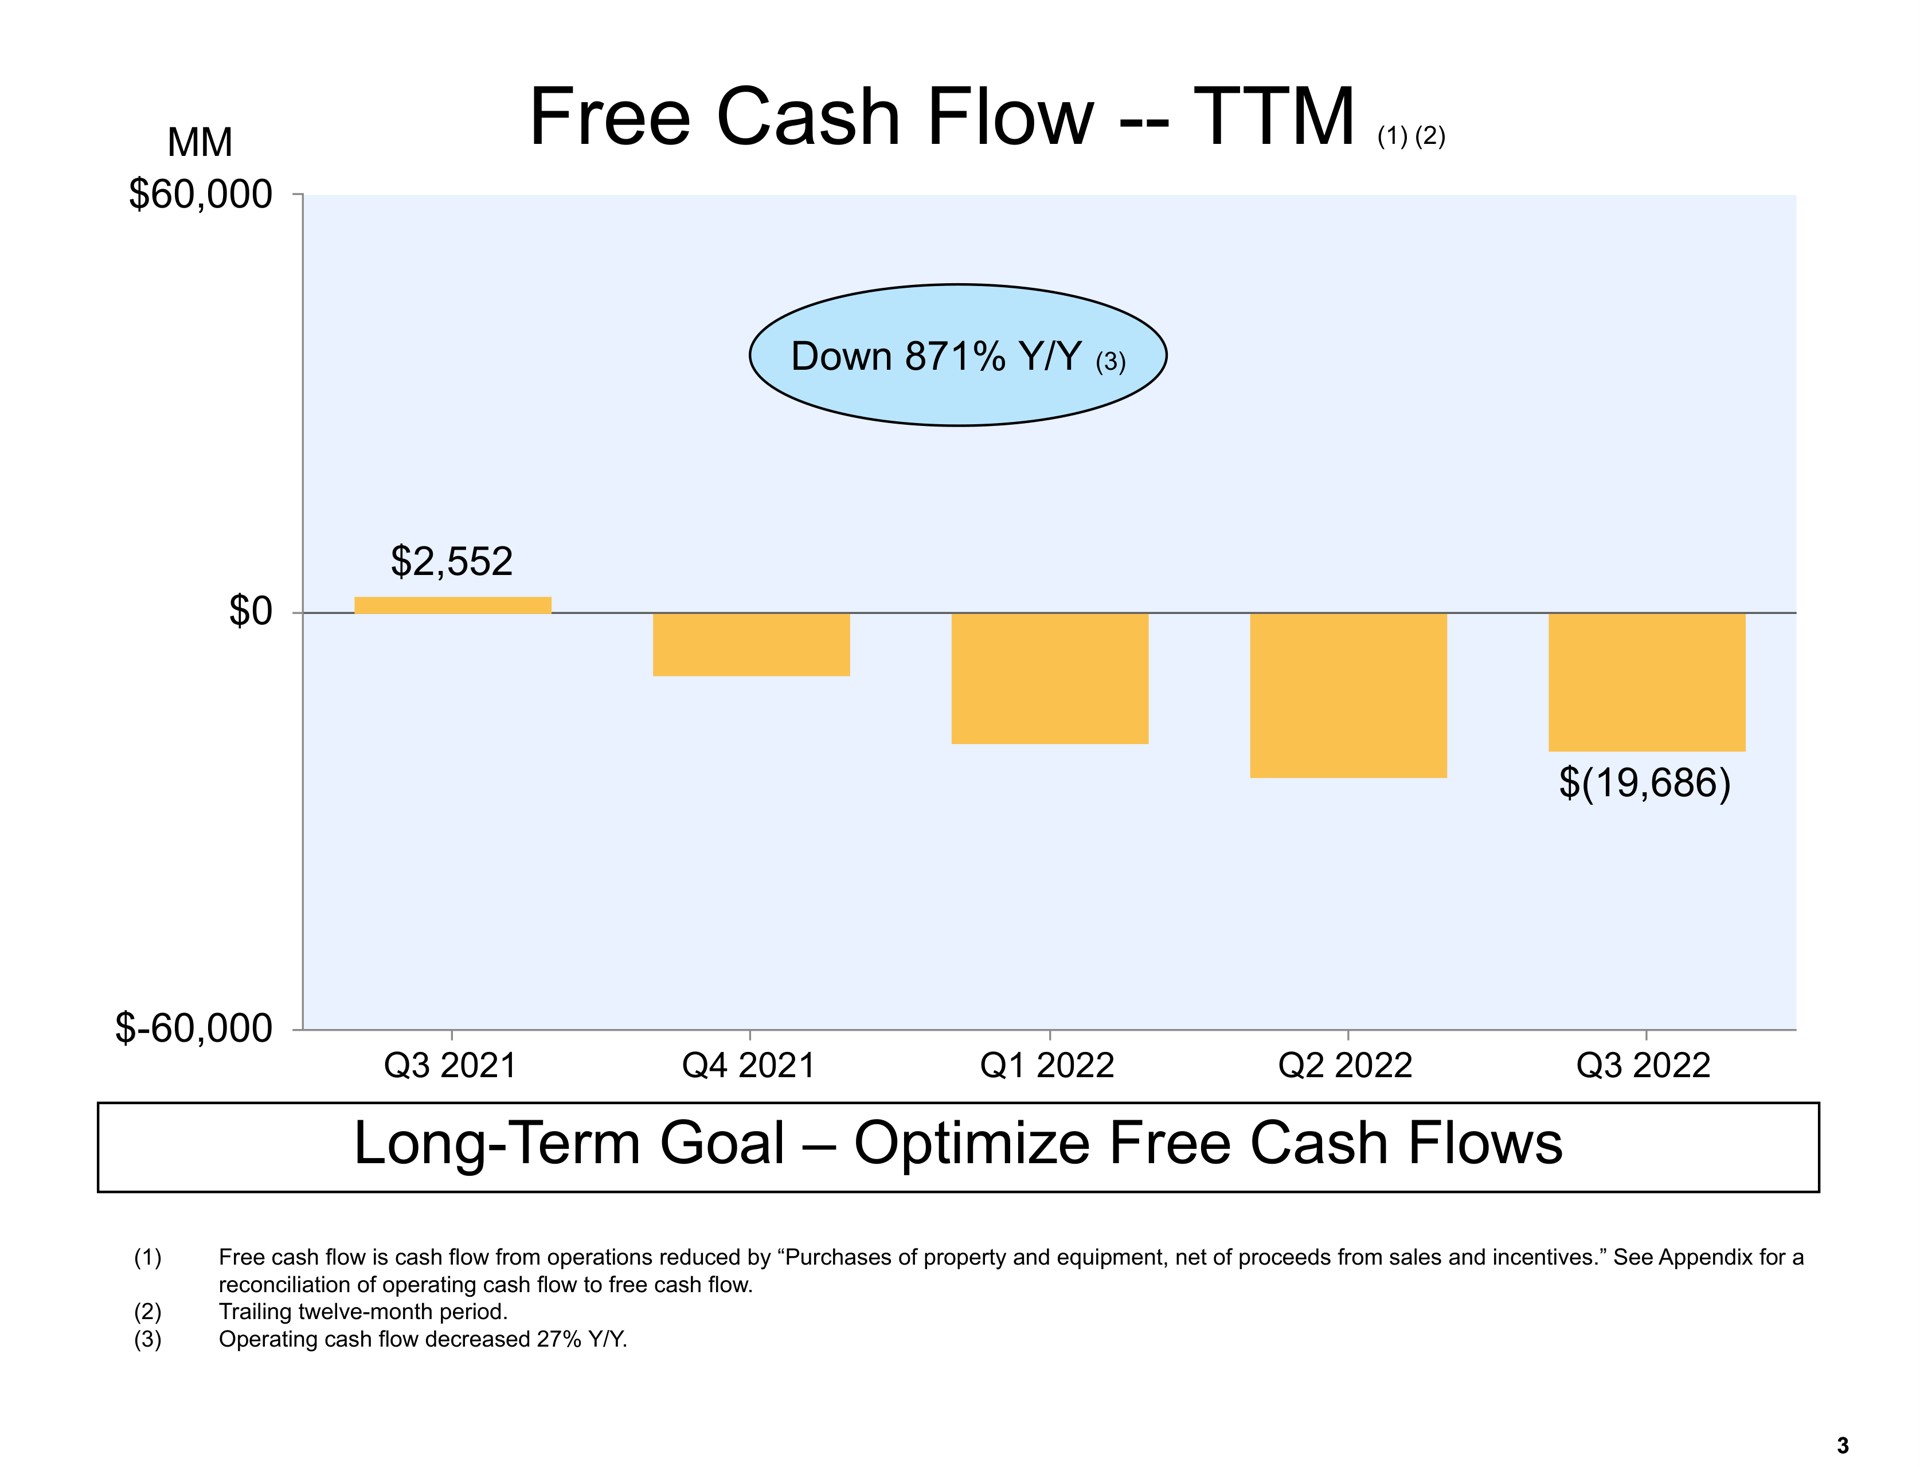 free cash flow long term goal optimize flows | Amazon